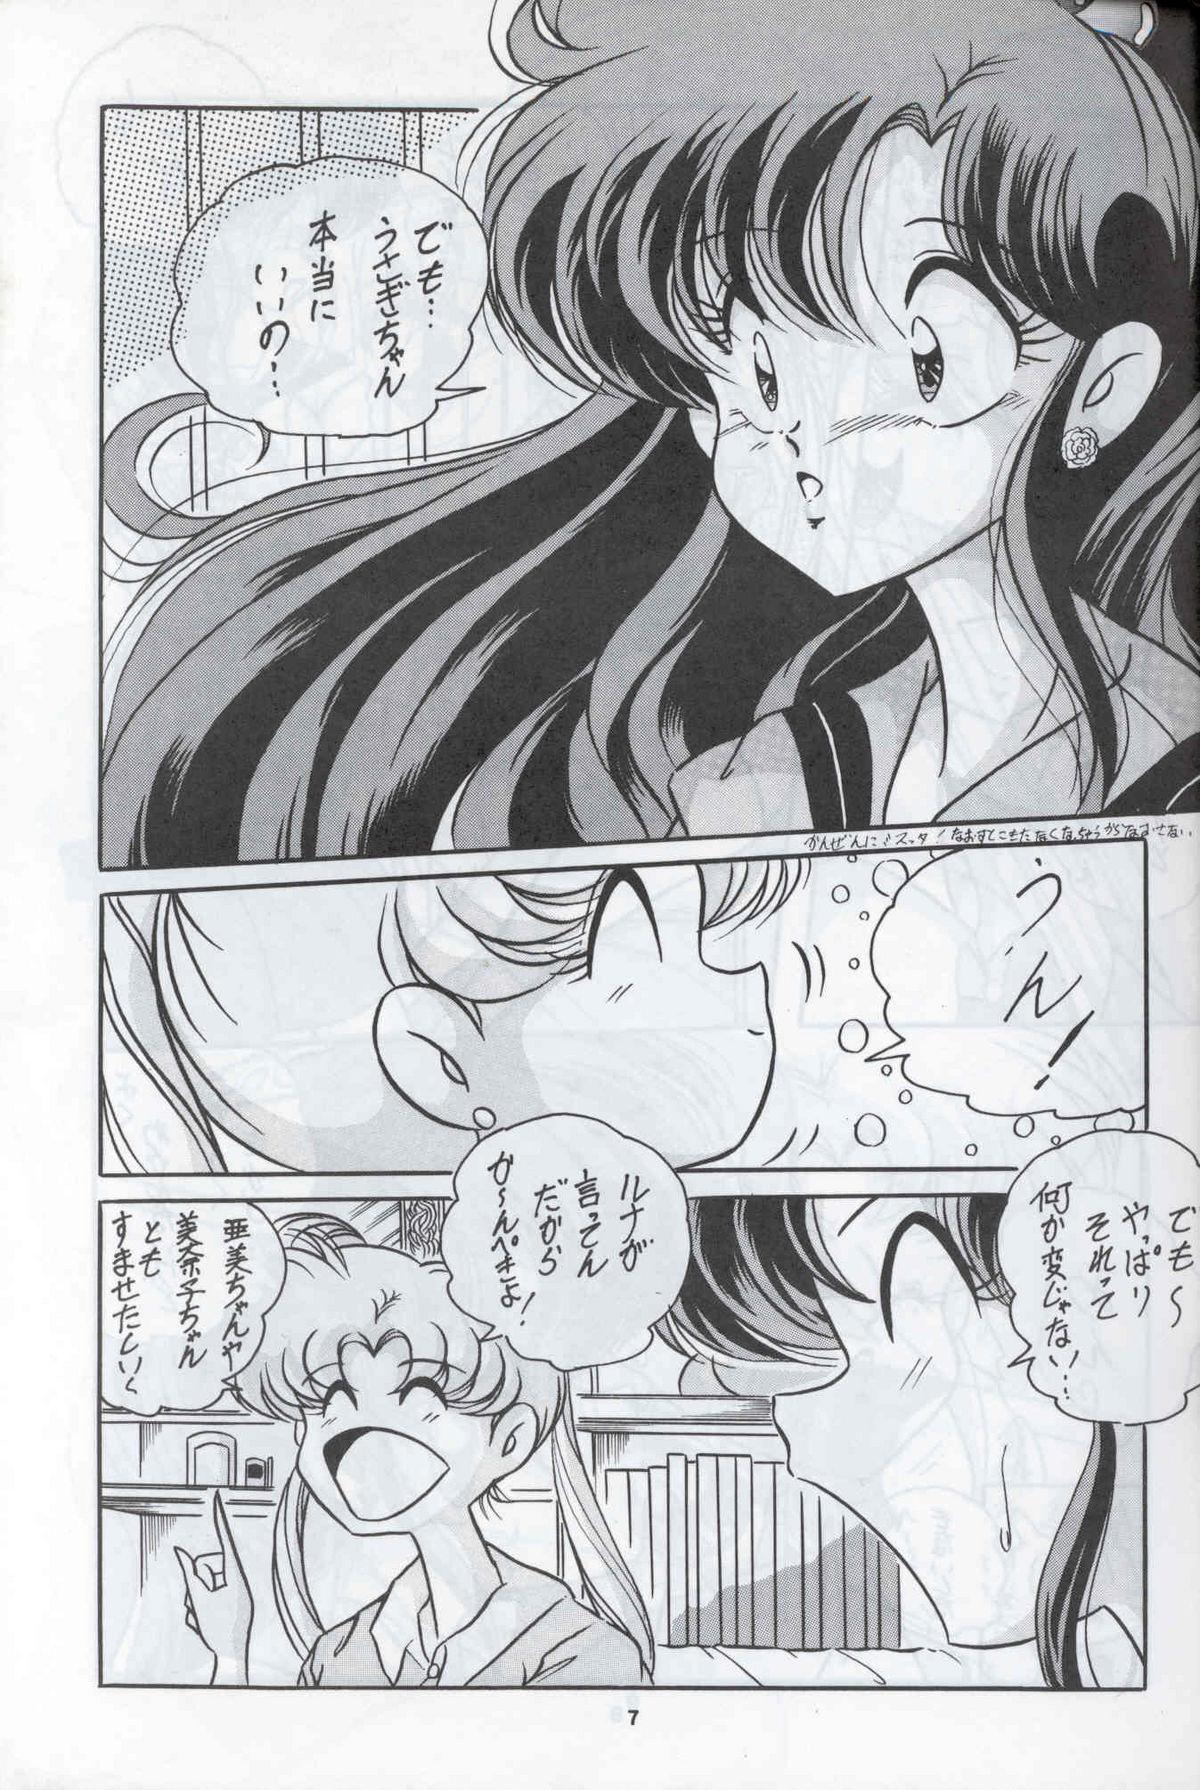 Fun C-COMPANY SPECIAL STAGE 12 - Sailor moon Ranma 12 Urusei yatsura Ghetto - Page 8